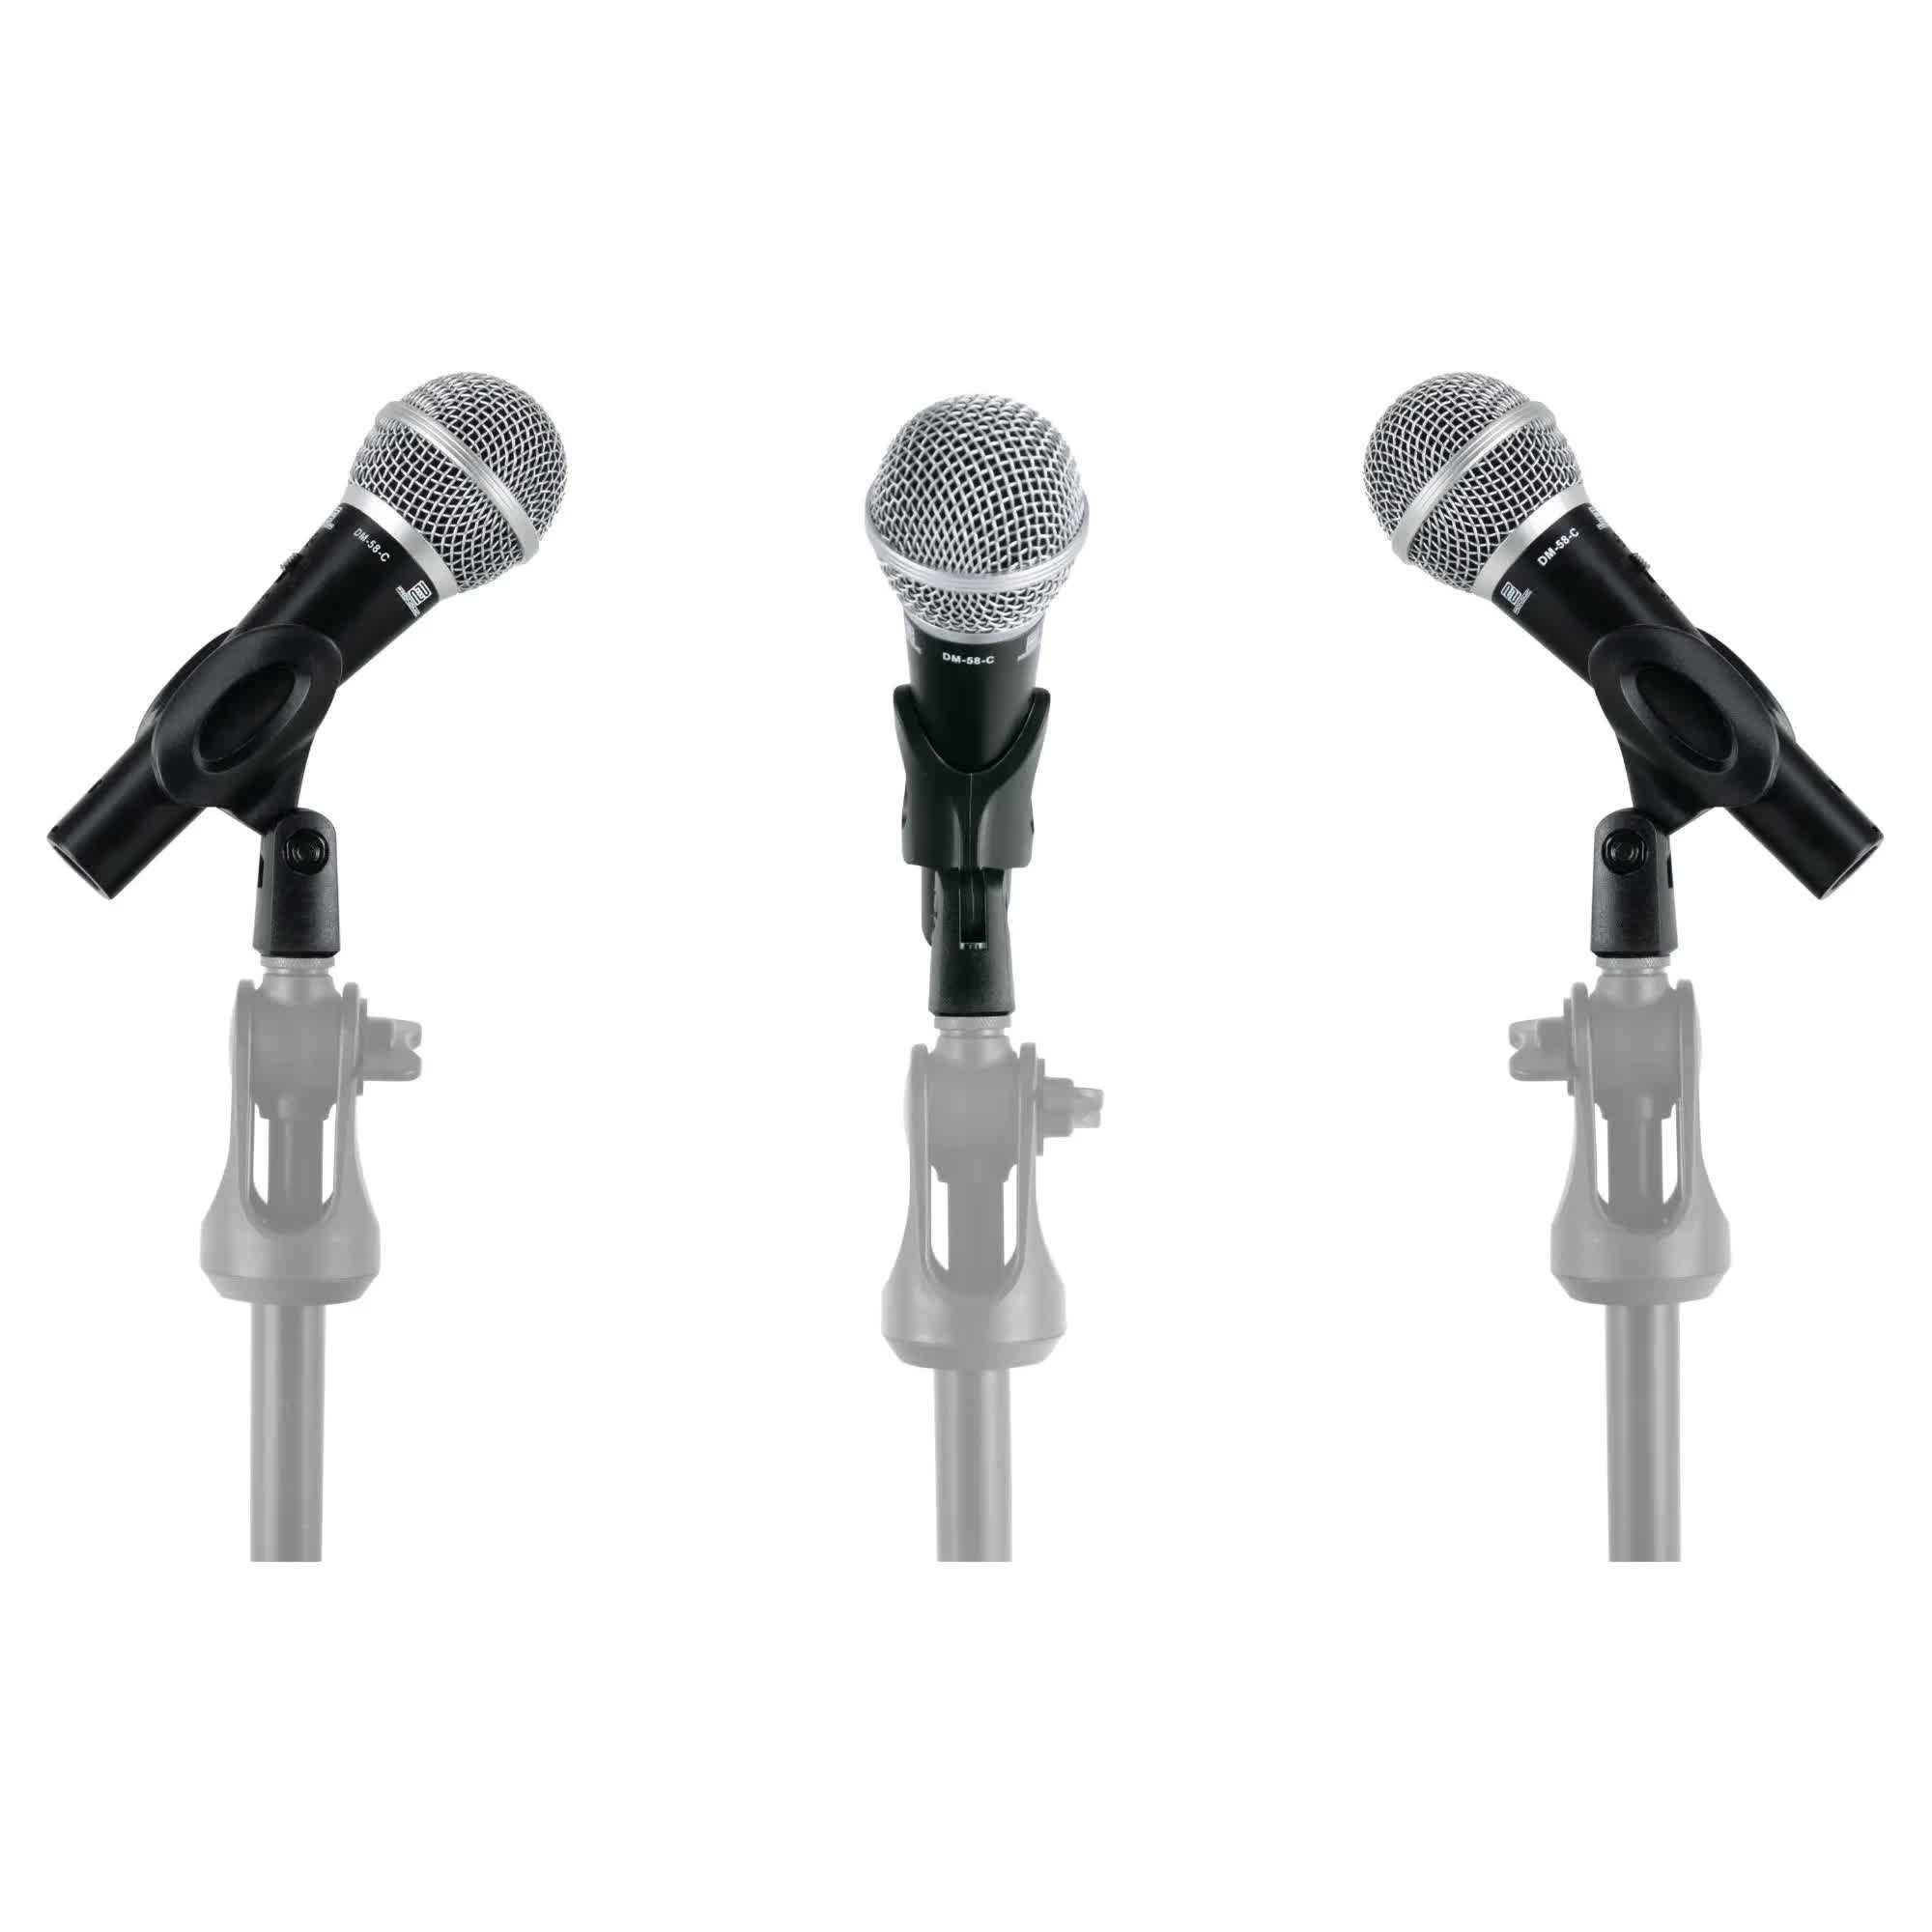 Set 3x Microfon Vocal Pronomic DM-58-C